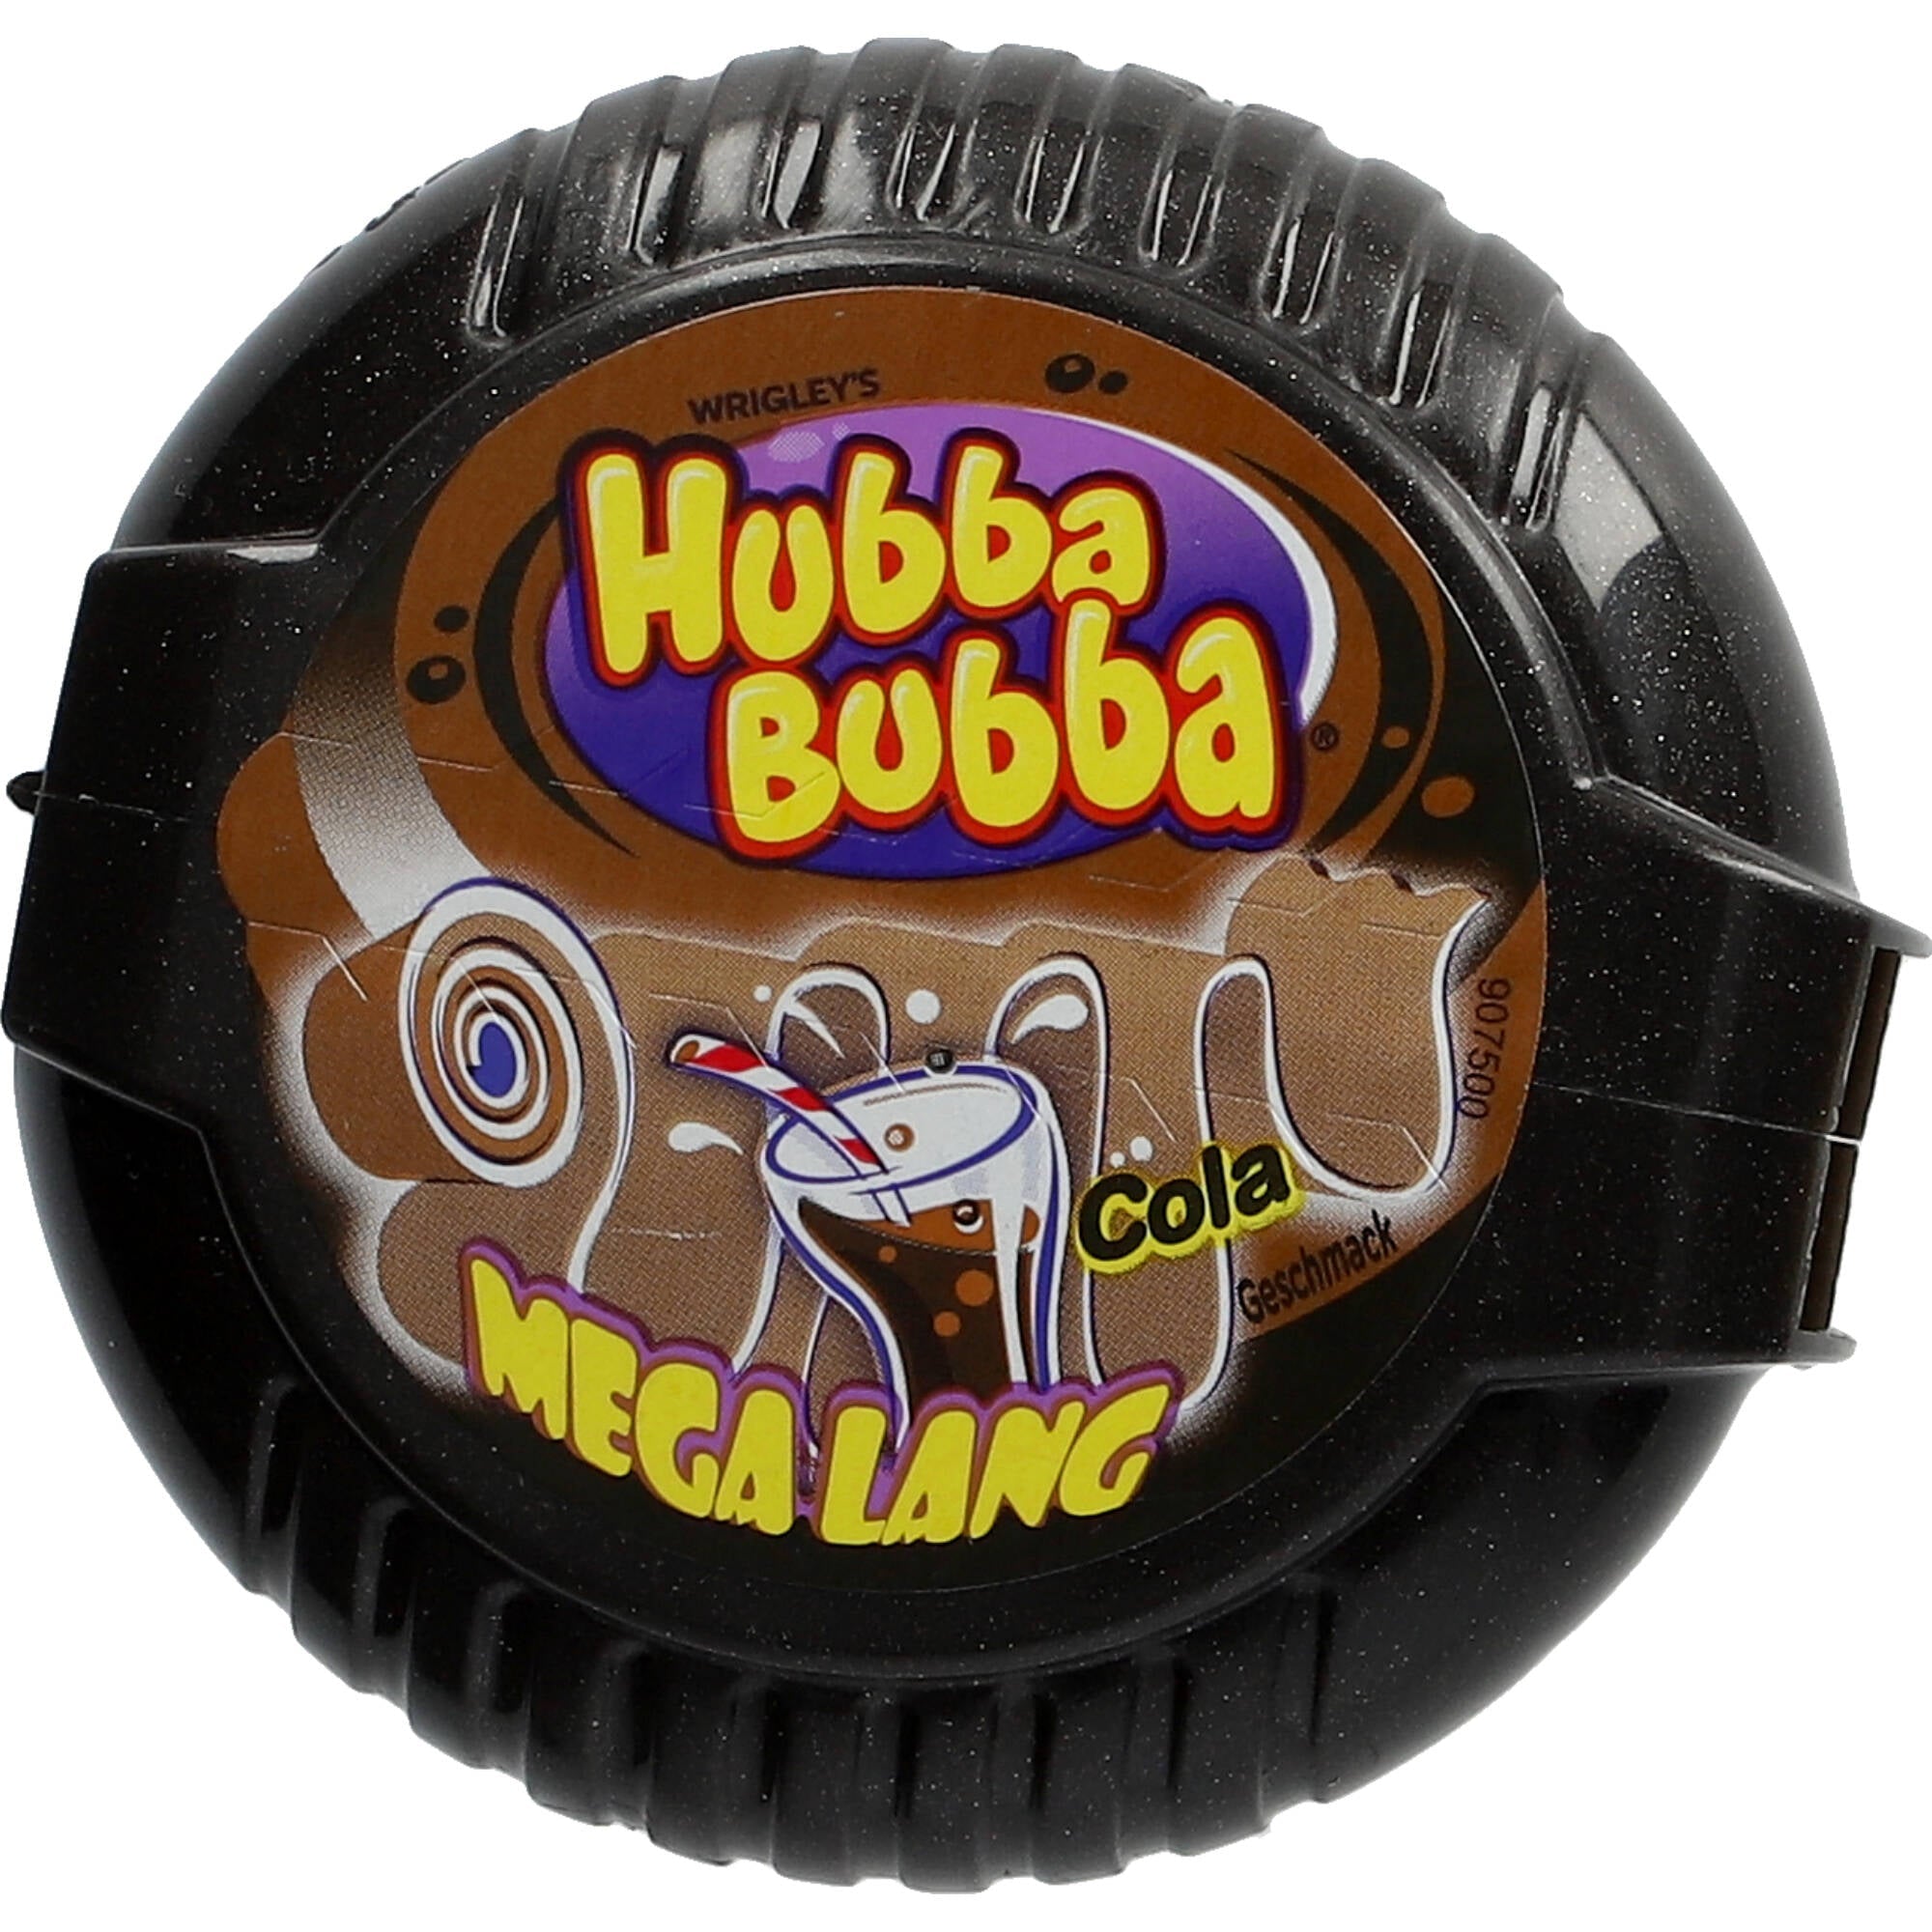 Hubba Bubba Bubble Tape - Mega Lang Cola